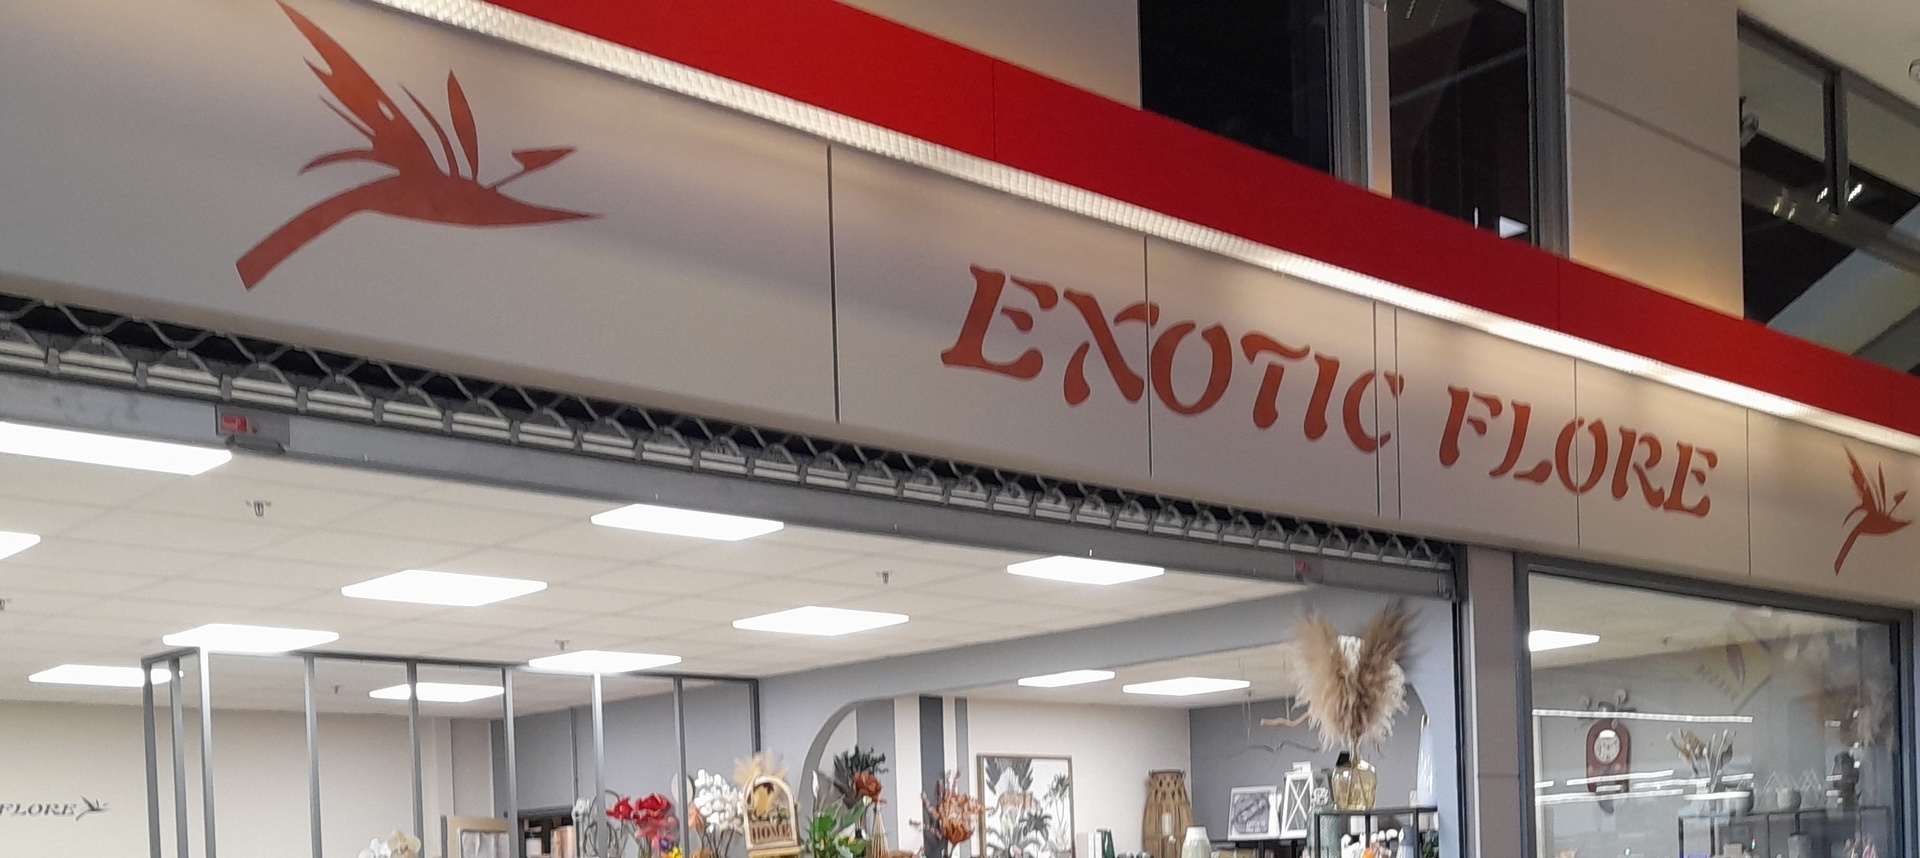 Boutique EXOTIC FLORE - Gevrey Nuits Commerces